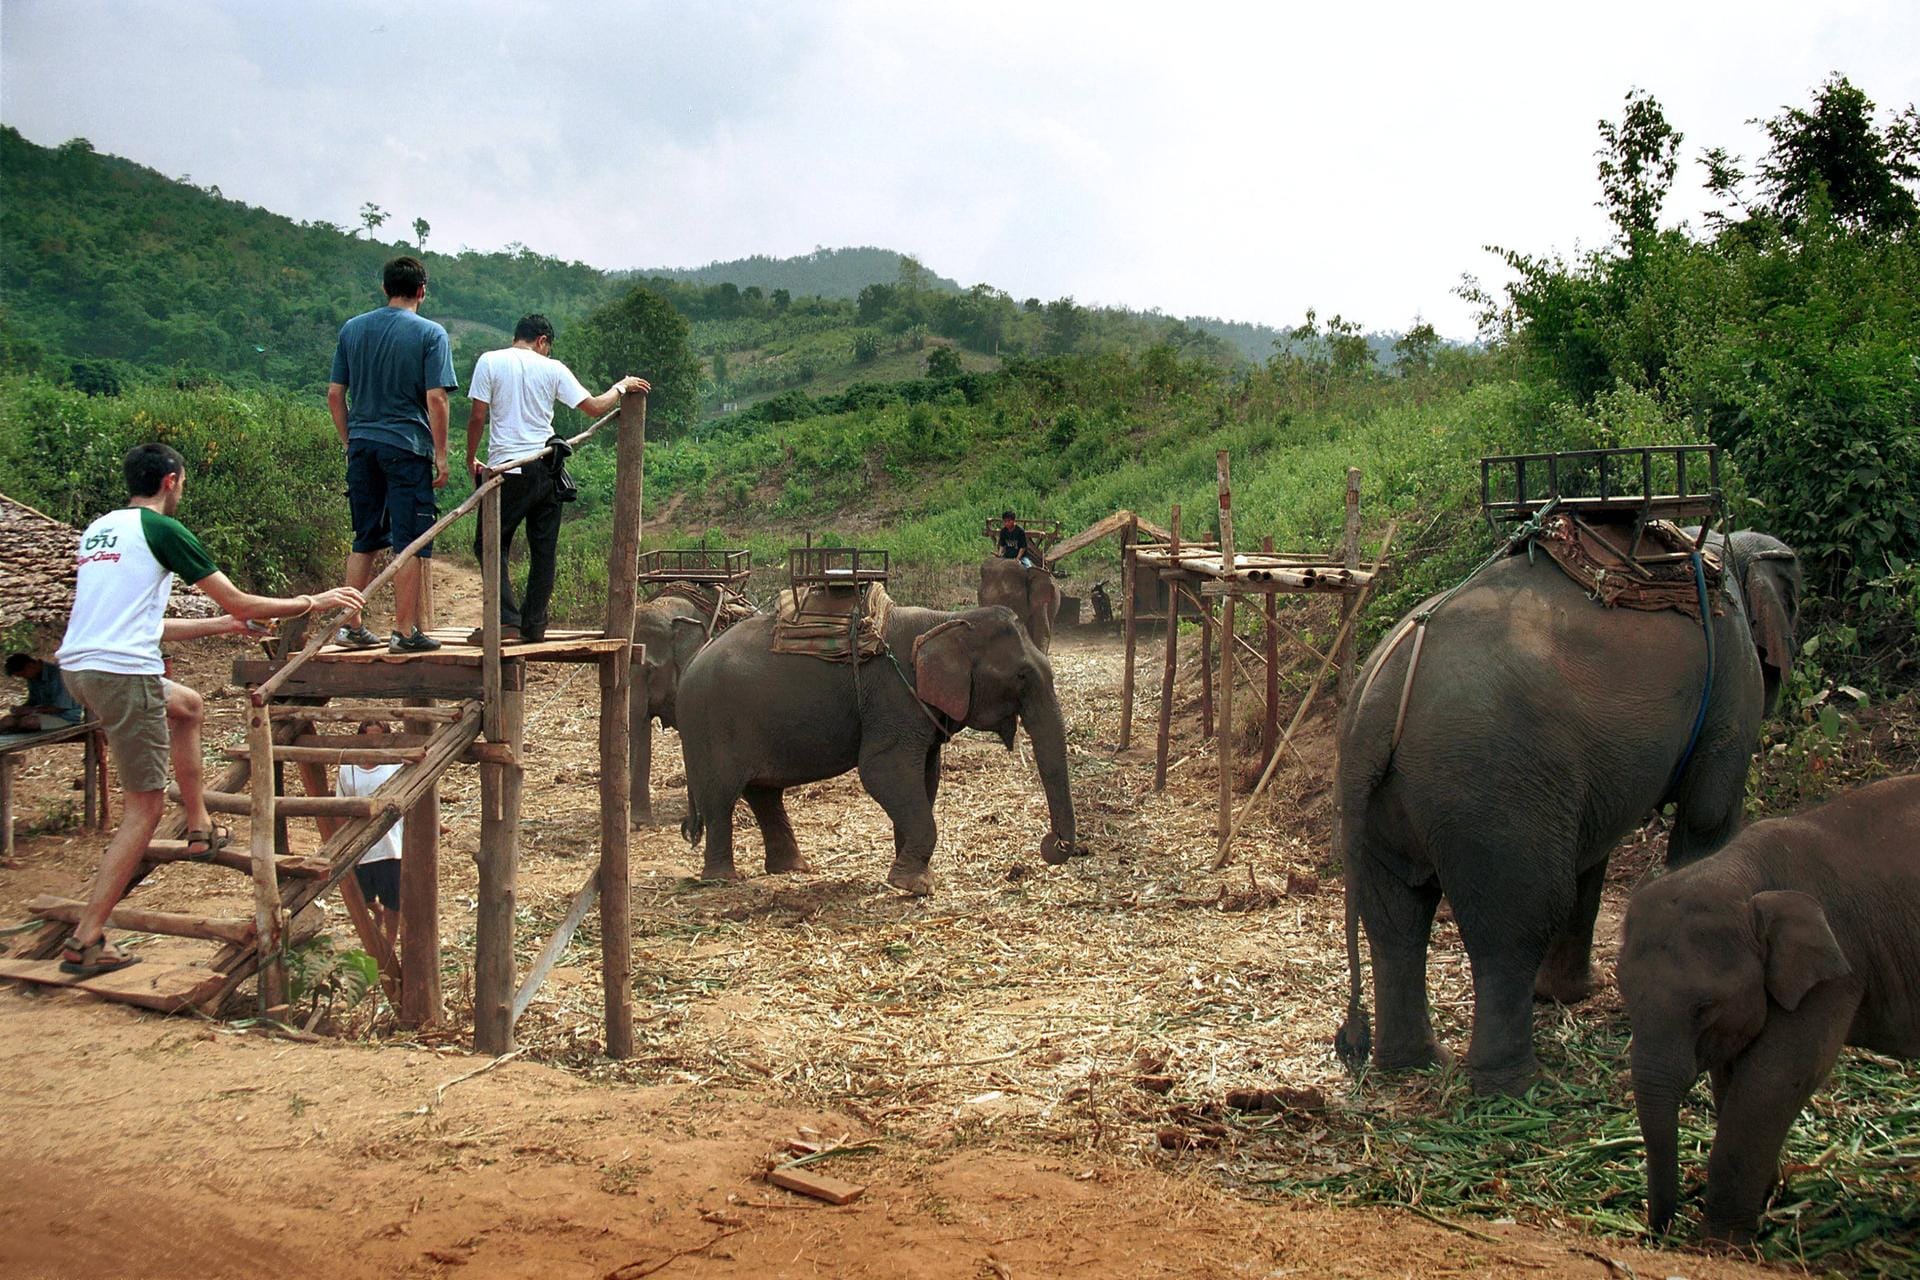 Beliebte Touristenattraktion: Elefantenreiten in Thailand.